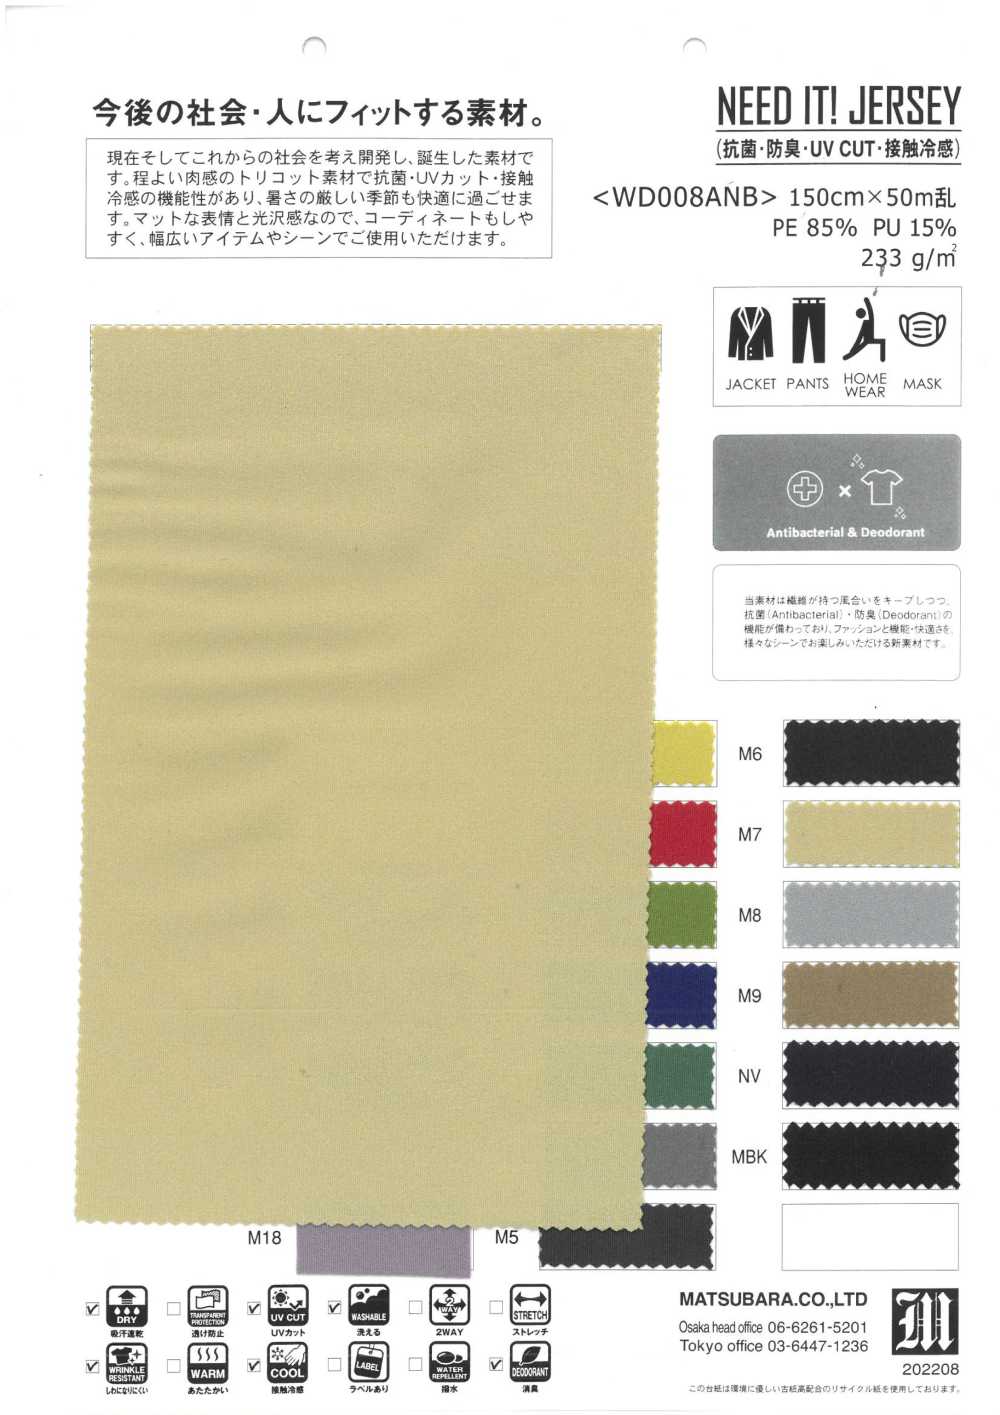 WD008ANB BISOGNO DI ESSA! JERSEY (Antibatterico, Deodorante, UV CUT Cool To The Touch)[Tessile / Tessuto] Matsubara